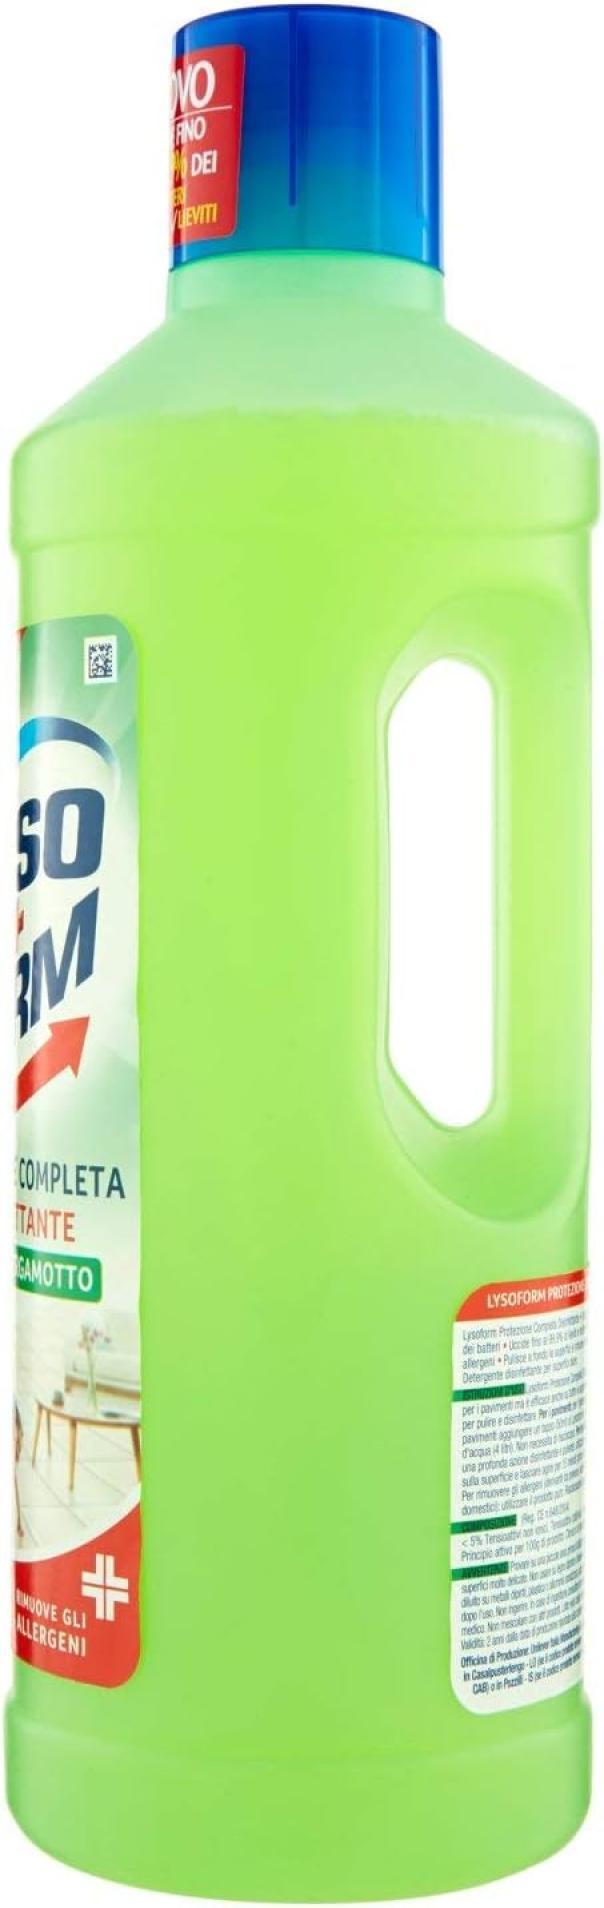 detergente-disinfettante-per-pavimenti-cedro-e-bergamotto-lysoform-1-lt-4